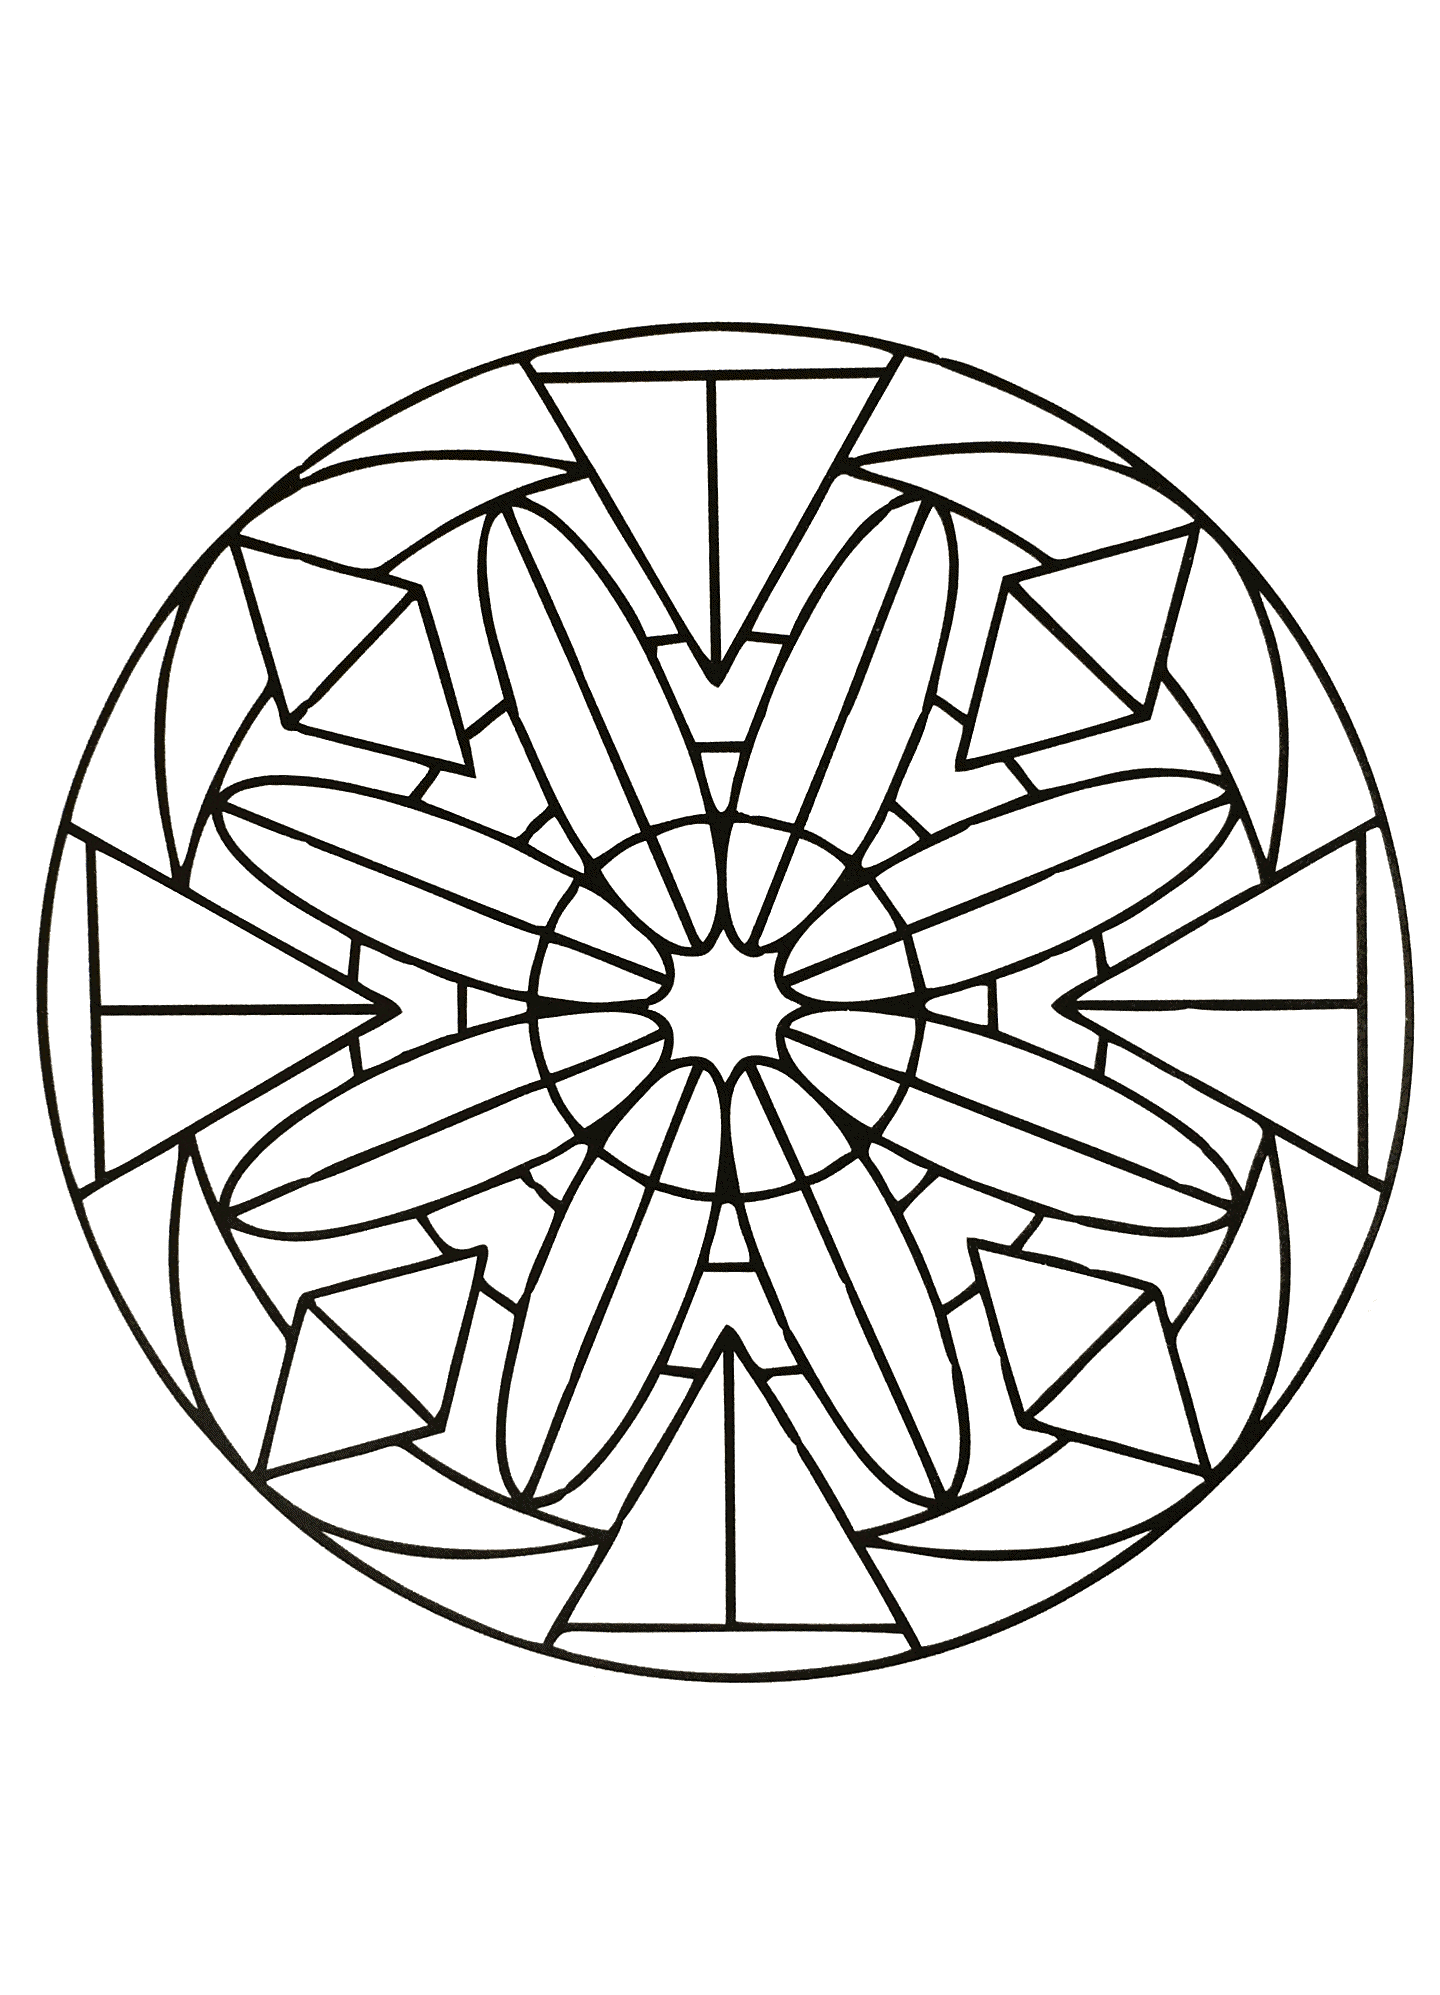 Ein symmetrisches Mandala, das perfekt ist, wenn Sie sich nach Einfachheit sehnen oder wenig Zeit zum Ausmalen haben.